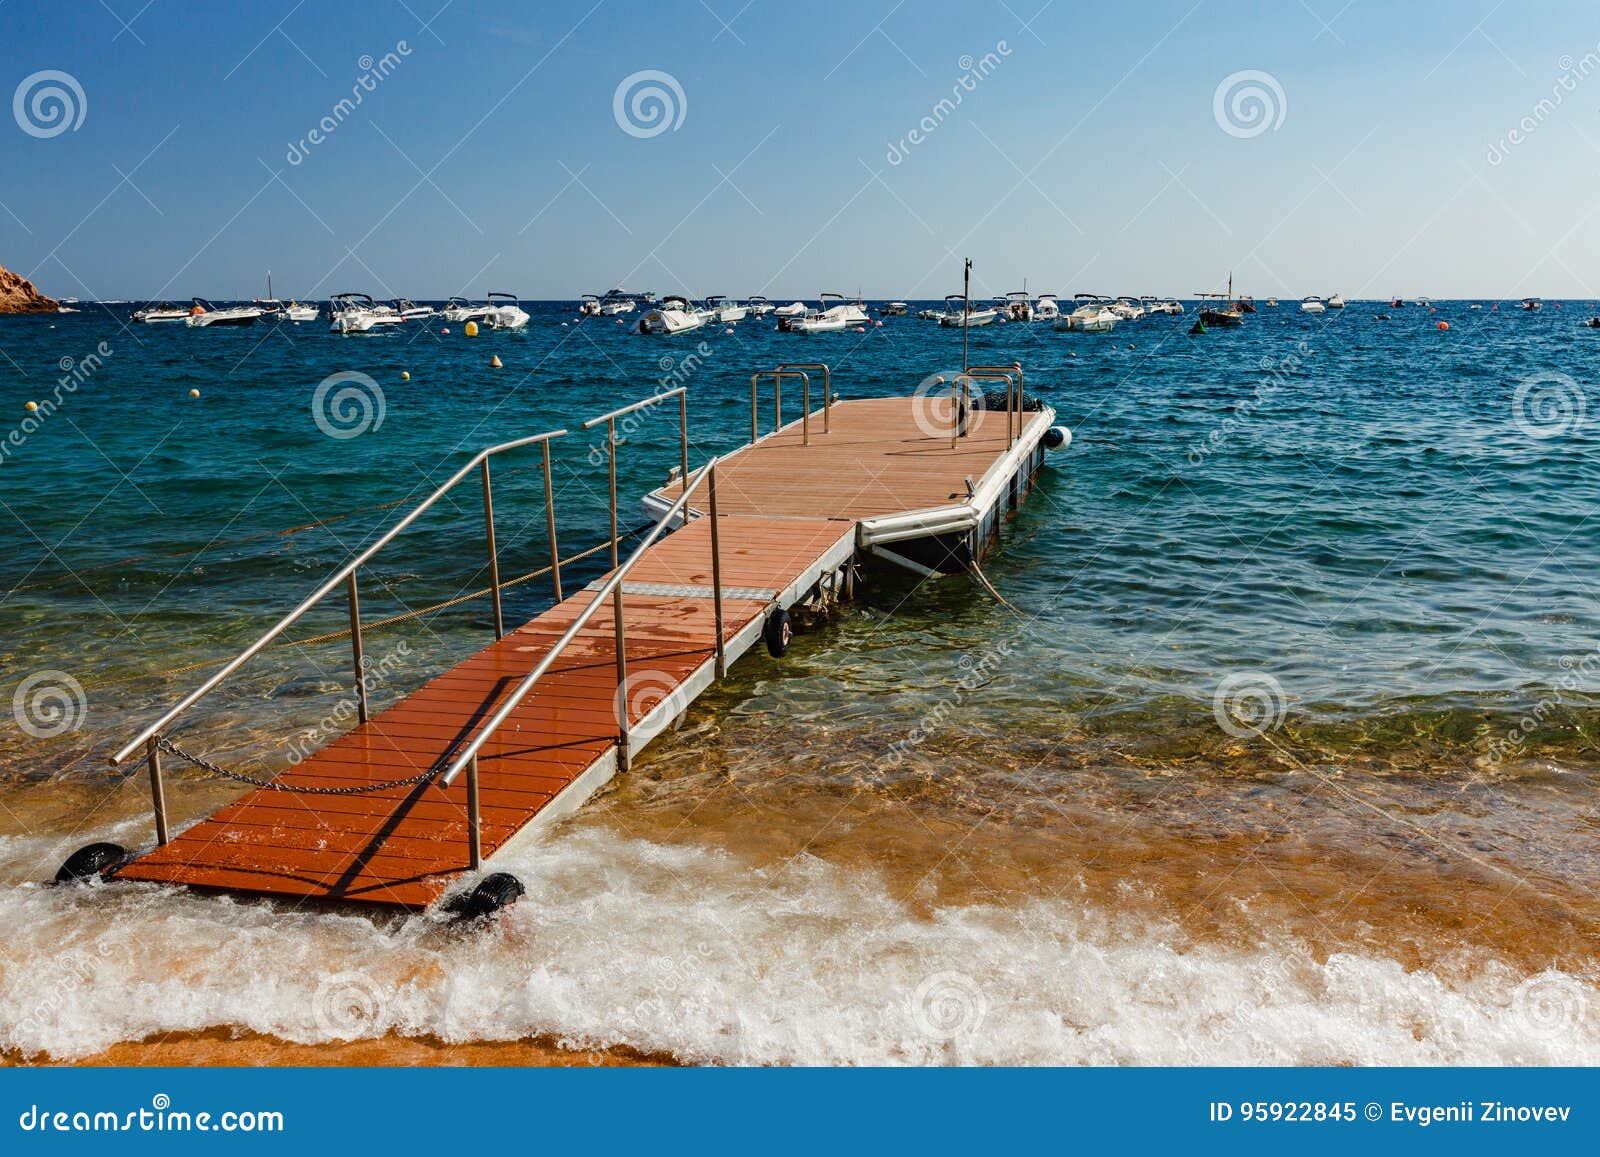 floating dock in tossa de mar